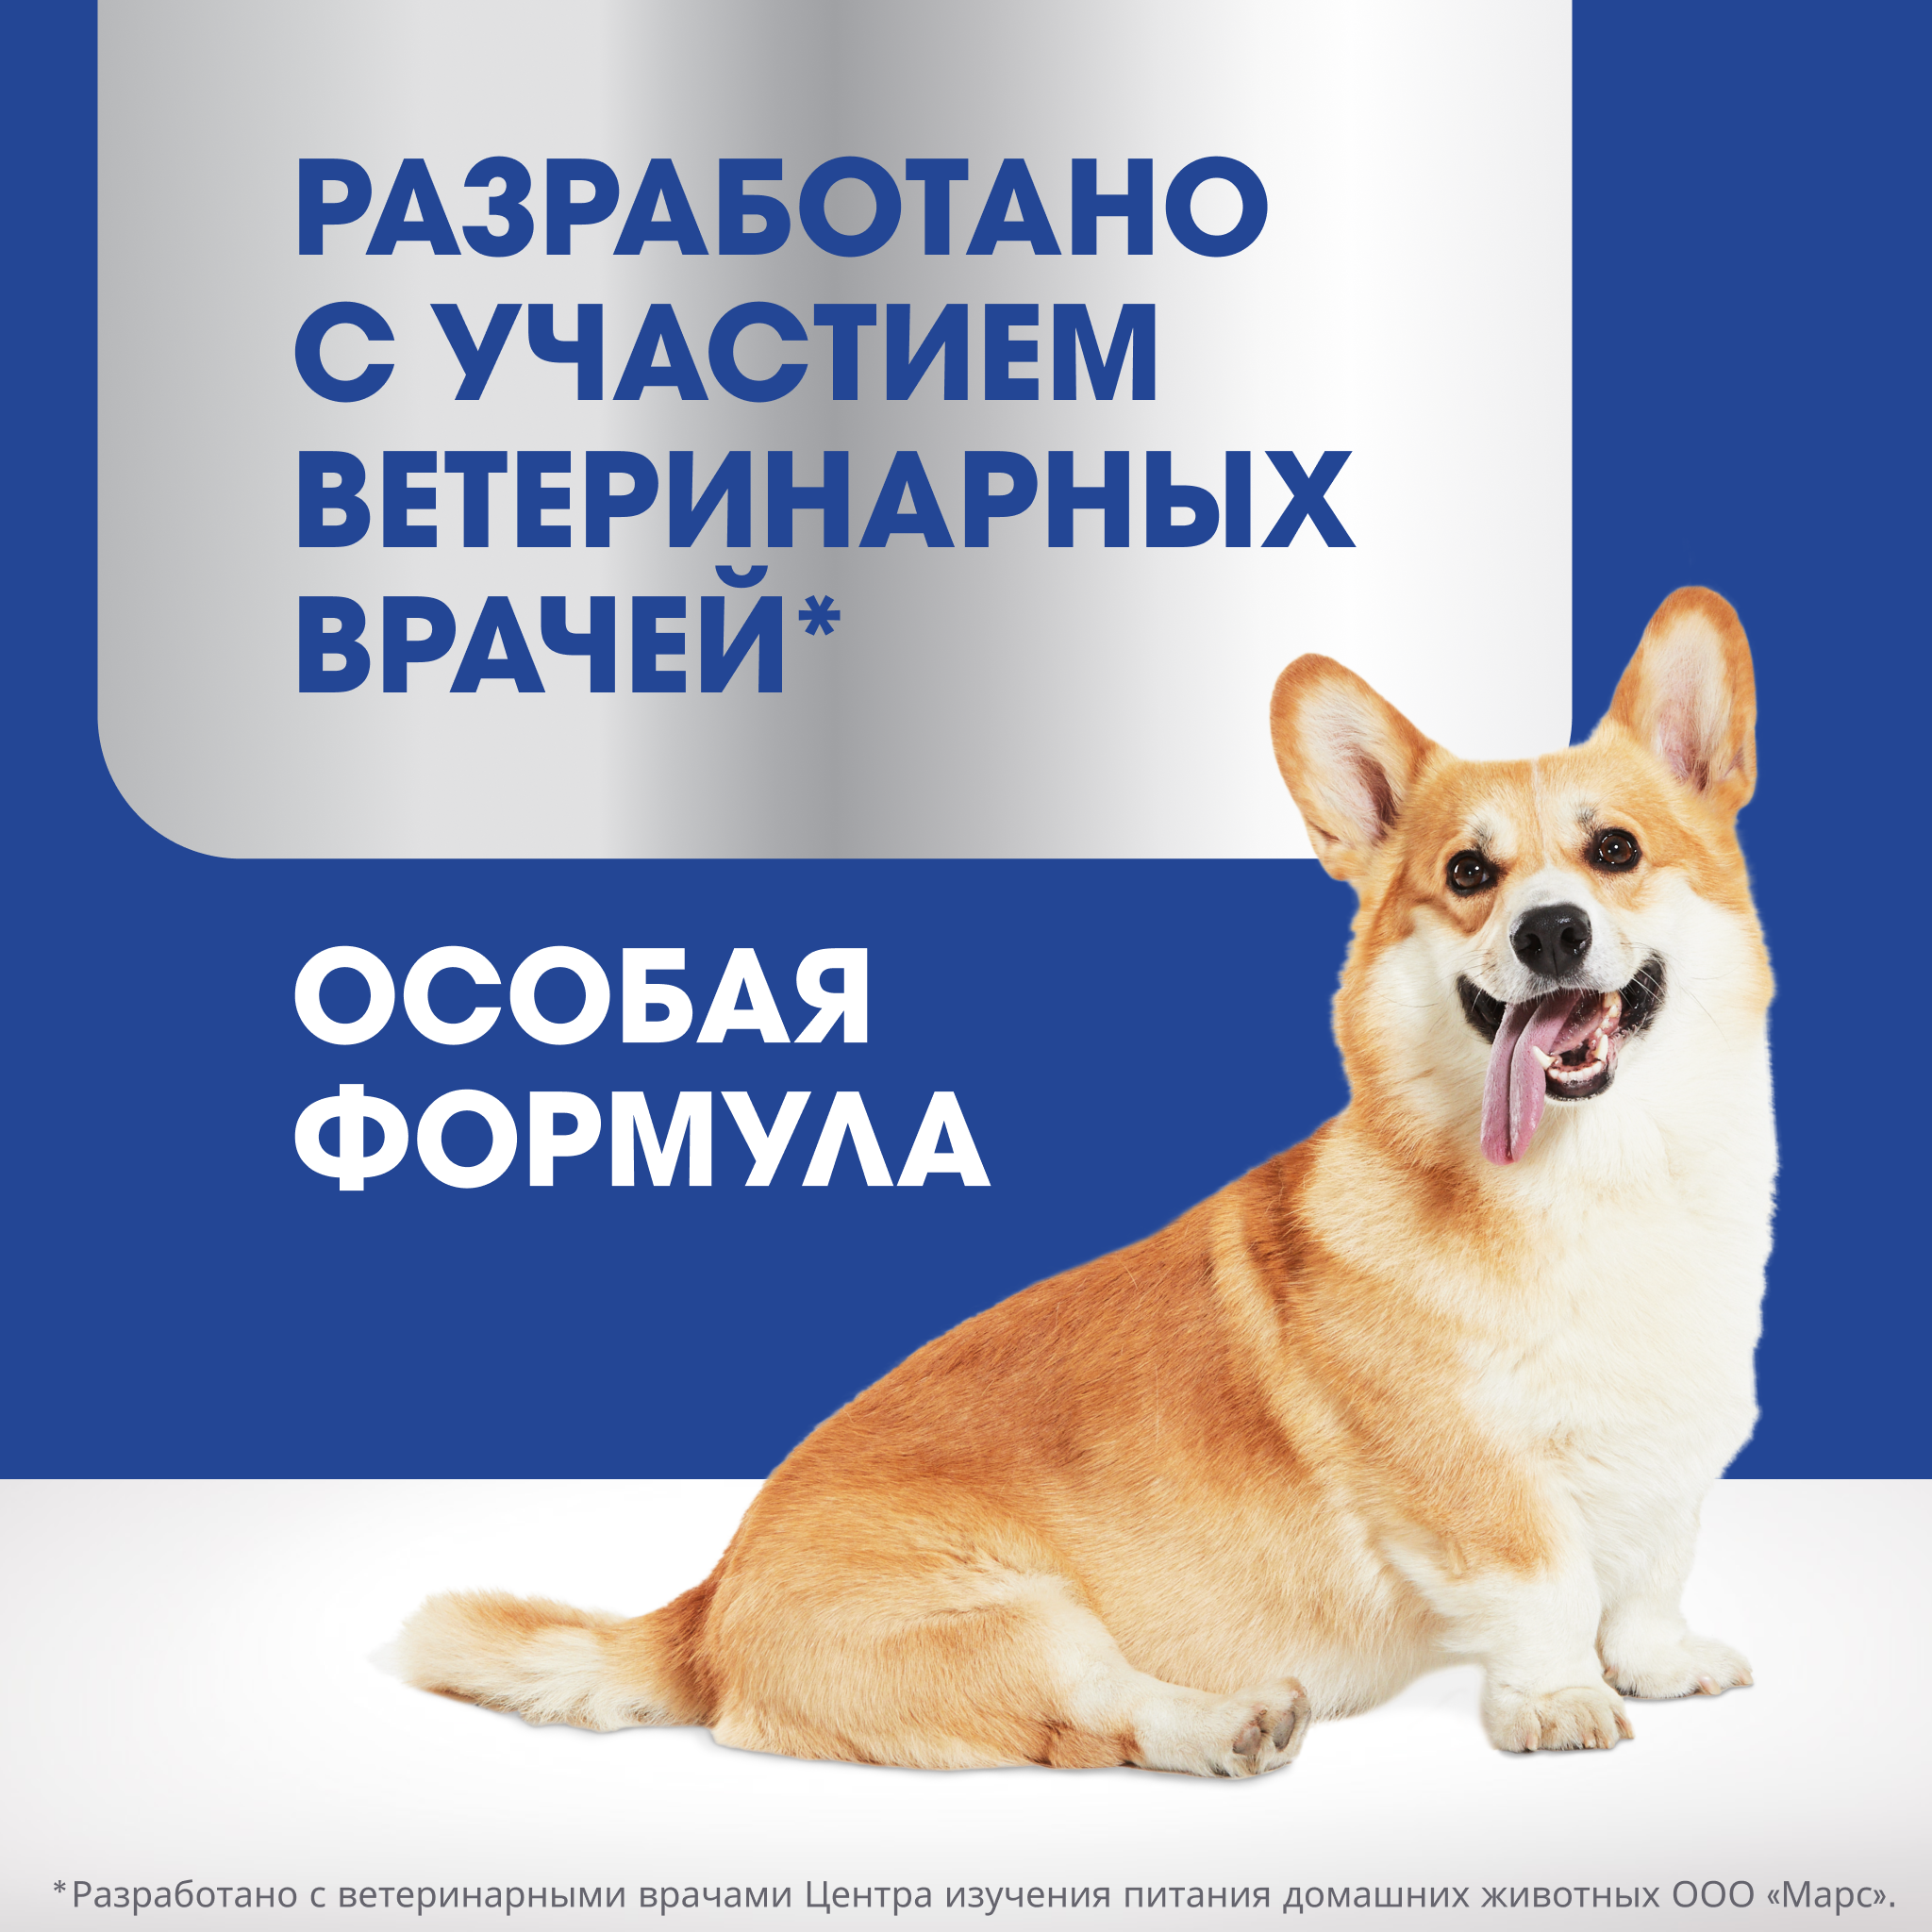 Лакомство для собак PERFECT FIT IMMUNITY «Для поддержания иммунитета» с говядиной 90г